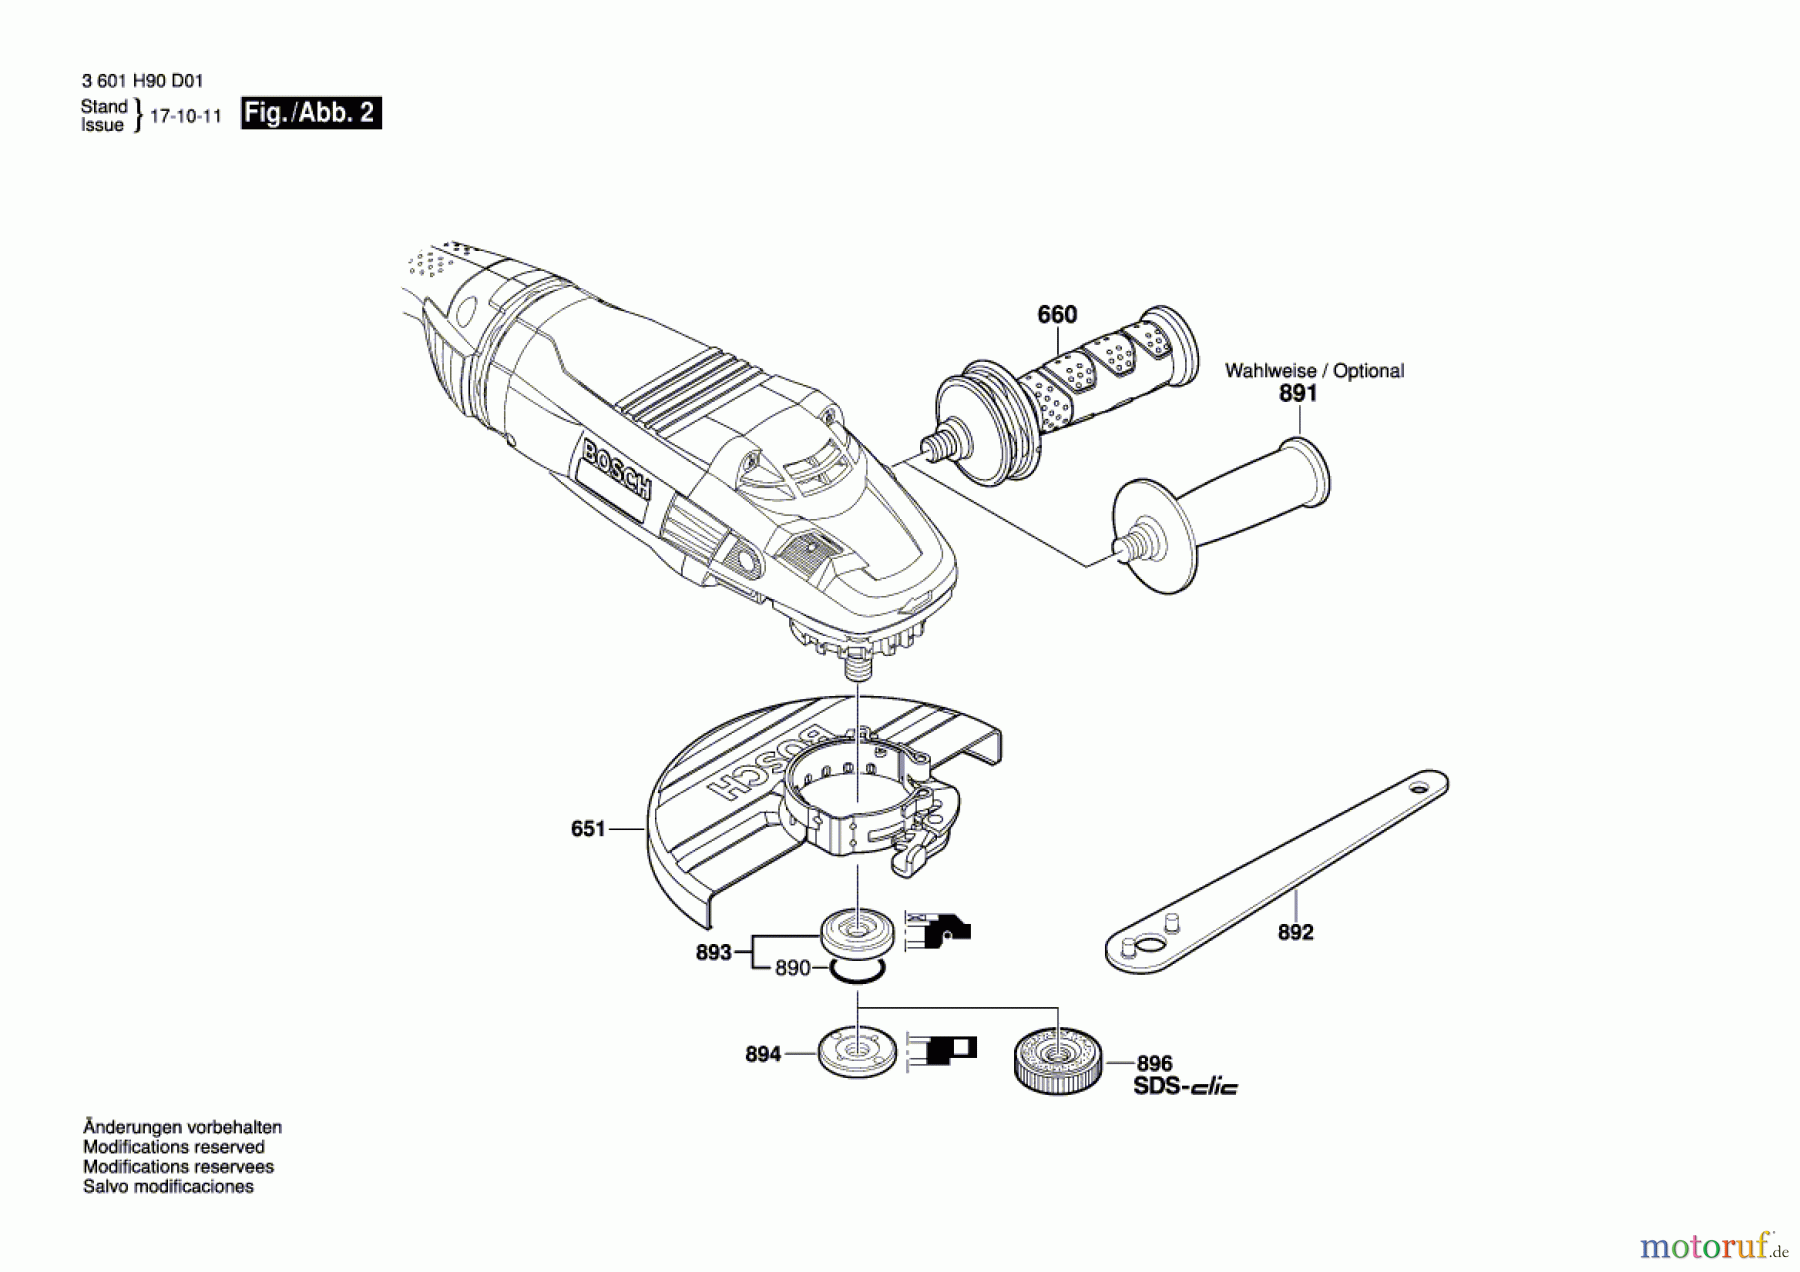  Bosch Werkzeug Winkelschleifer GWS 22-180 LVI Seite 2